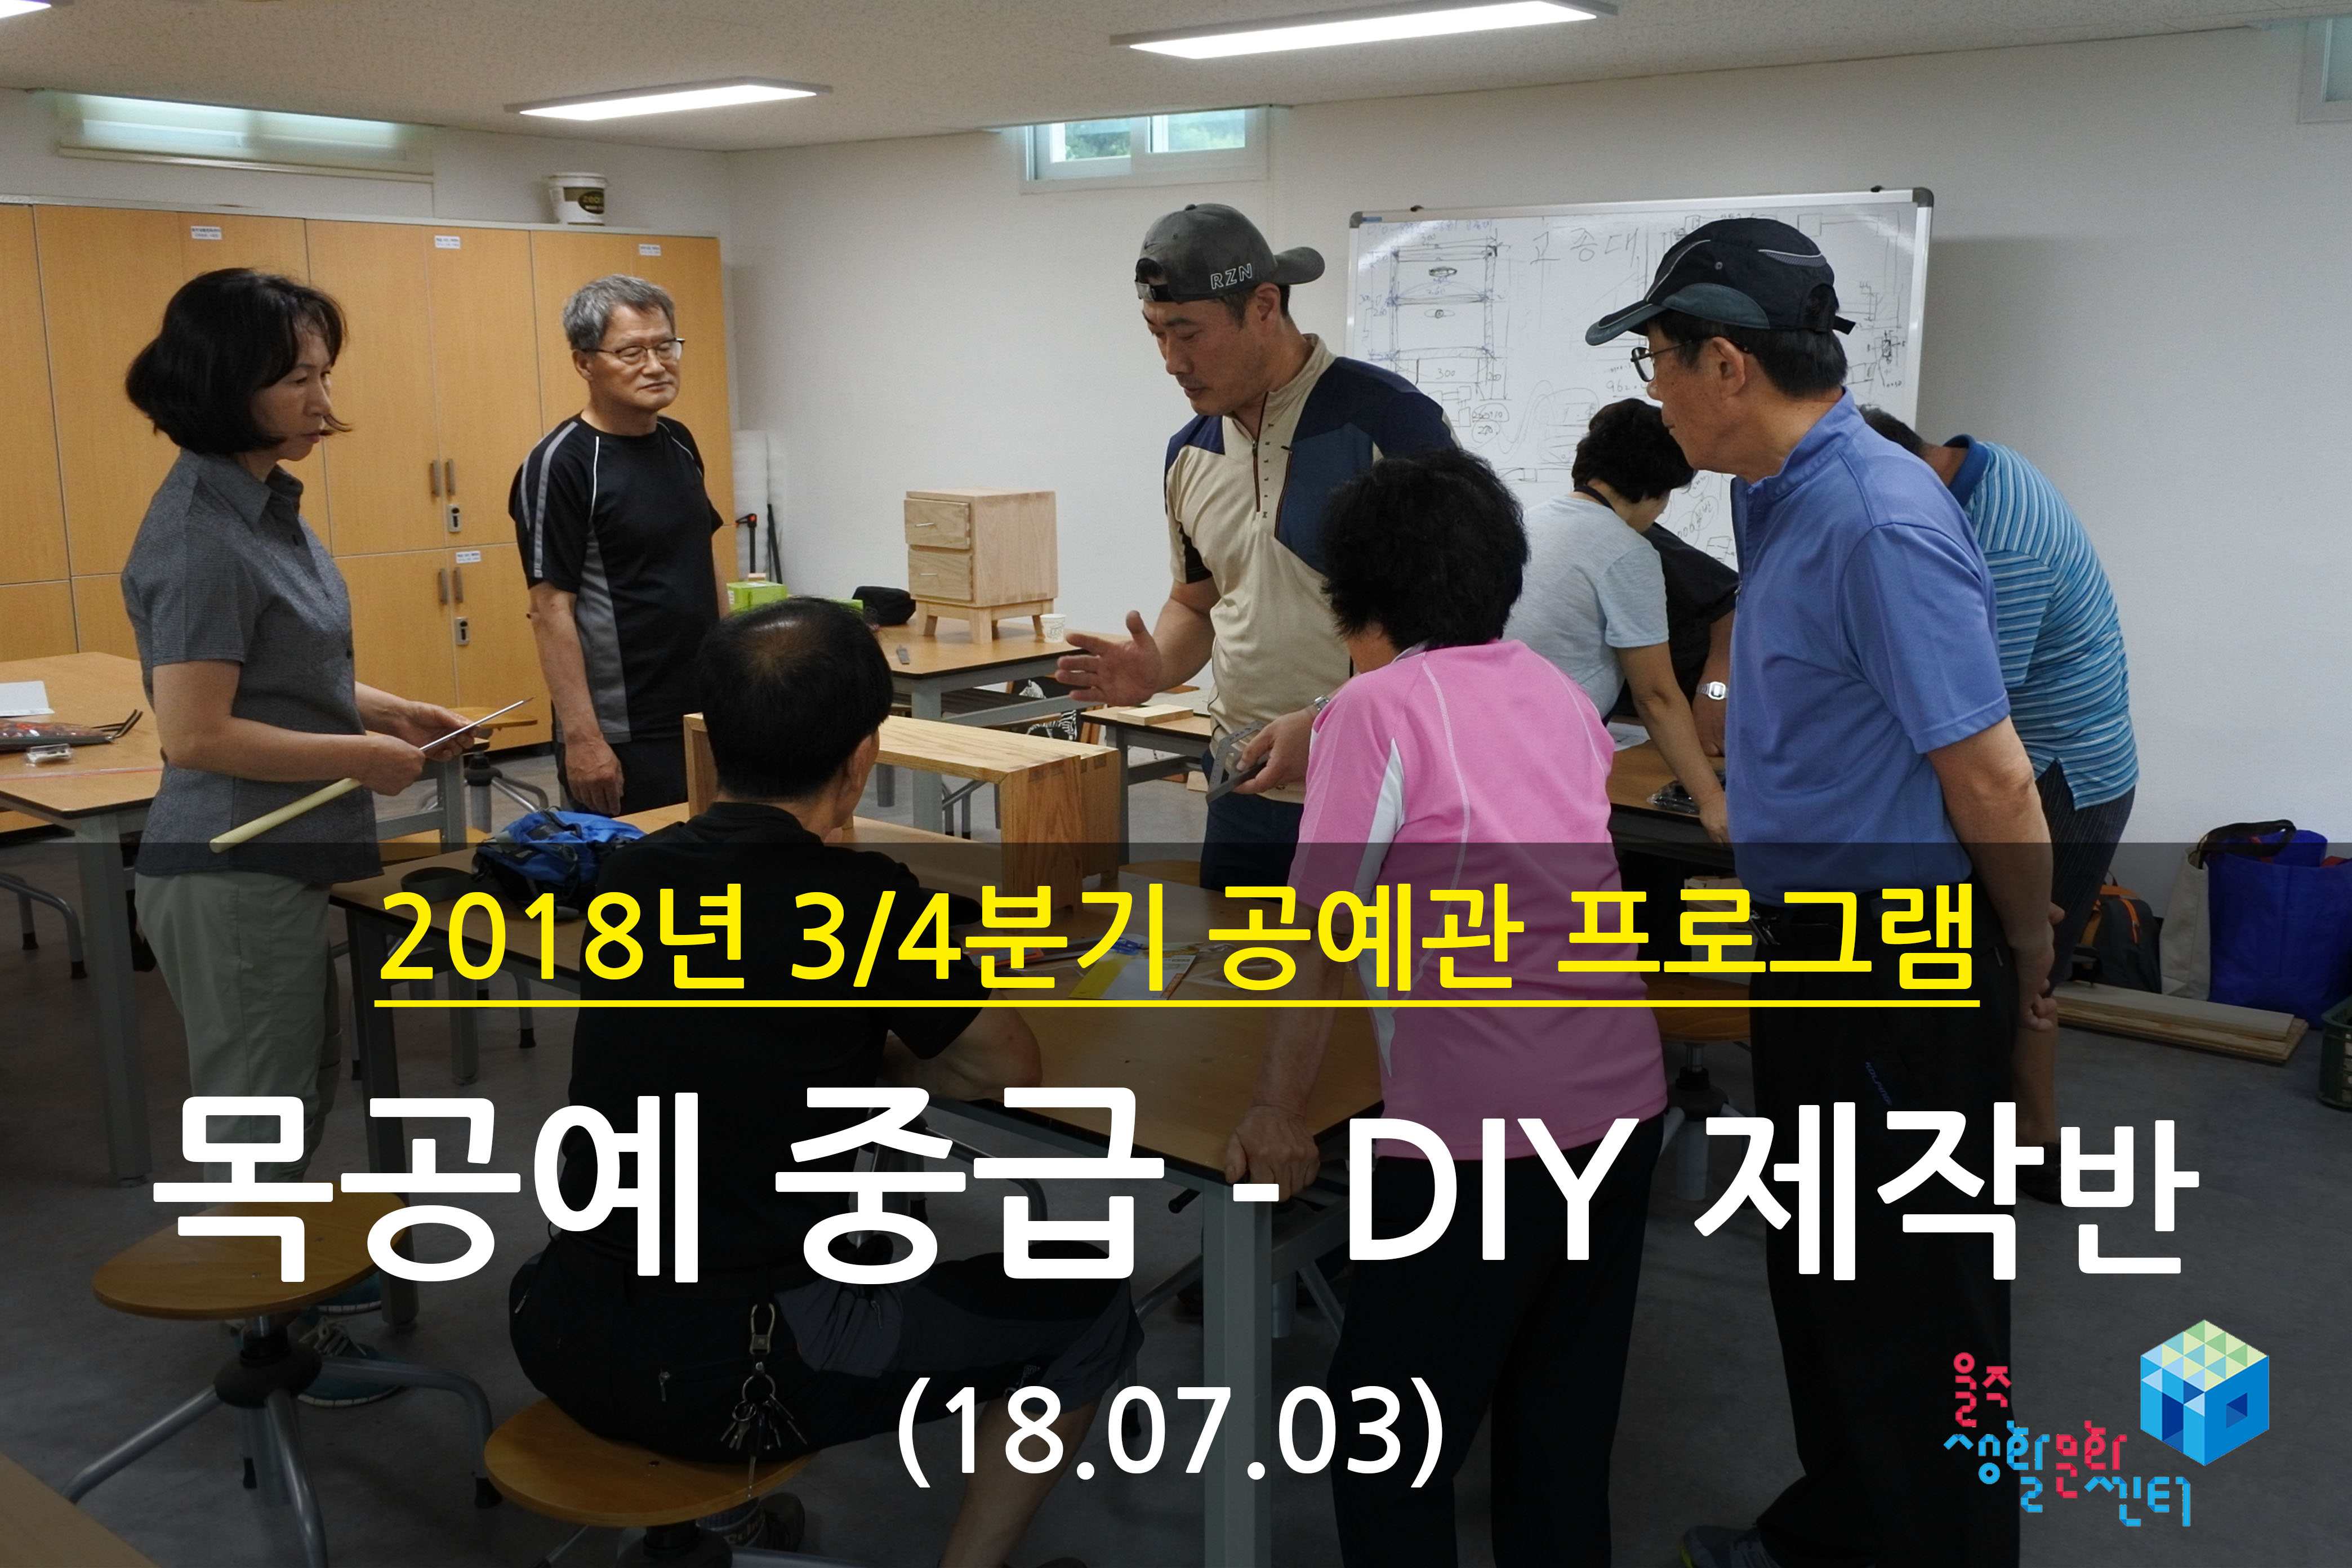 2018.07.03 _ 목공예 중급 - DIY 제작반 _ 3/4분기 1주차 수업